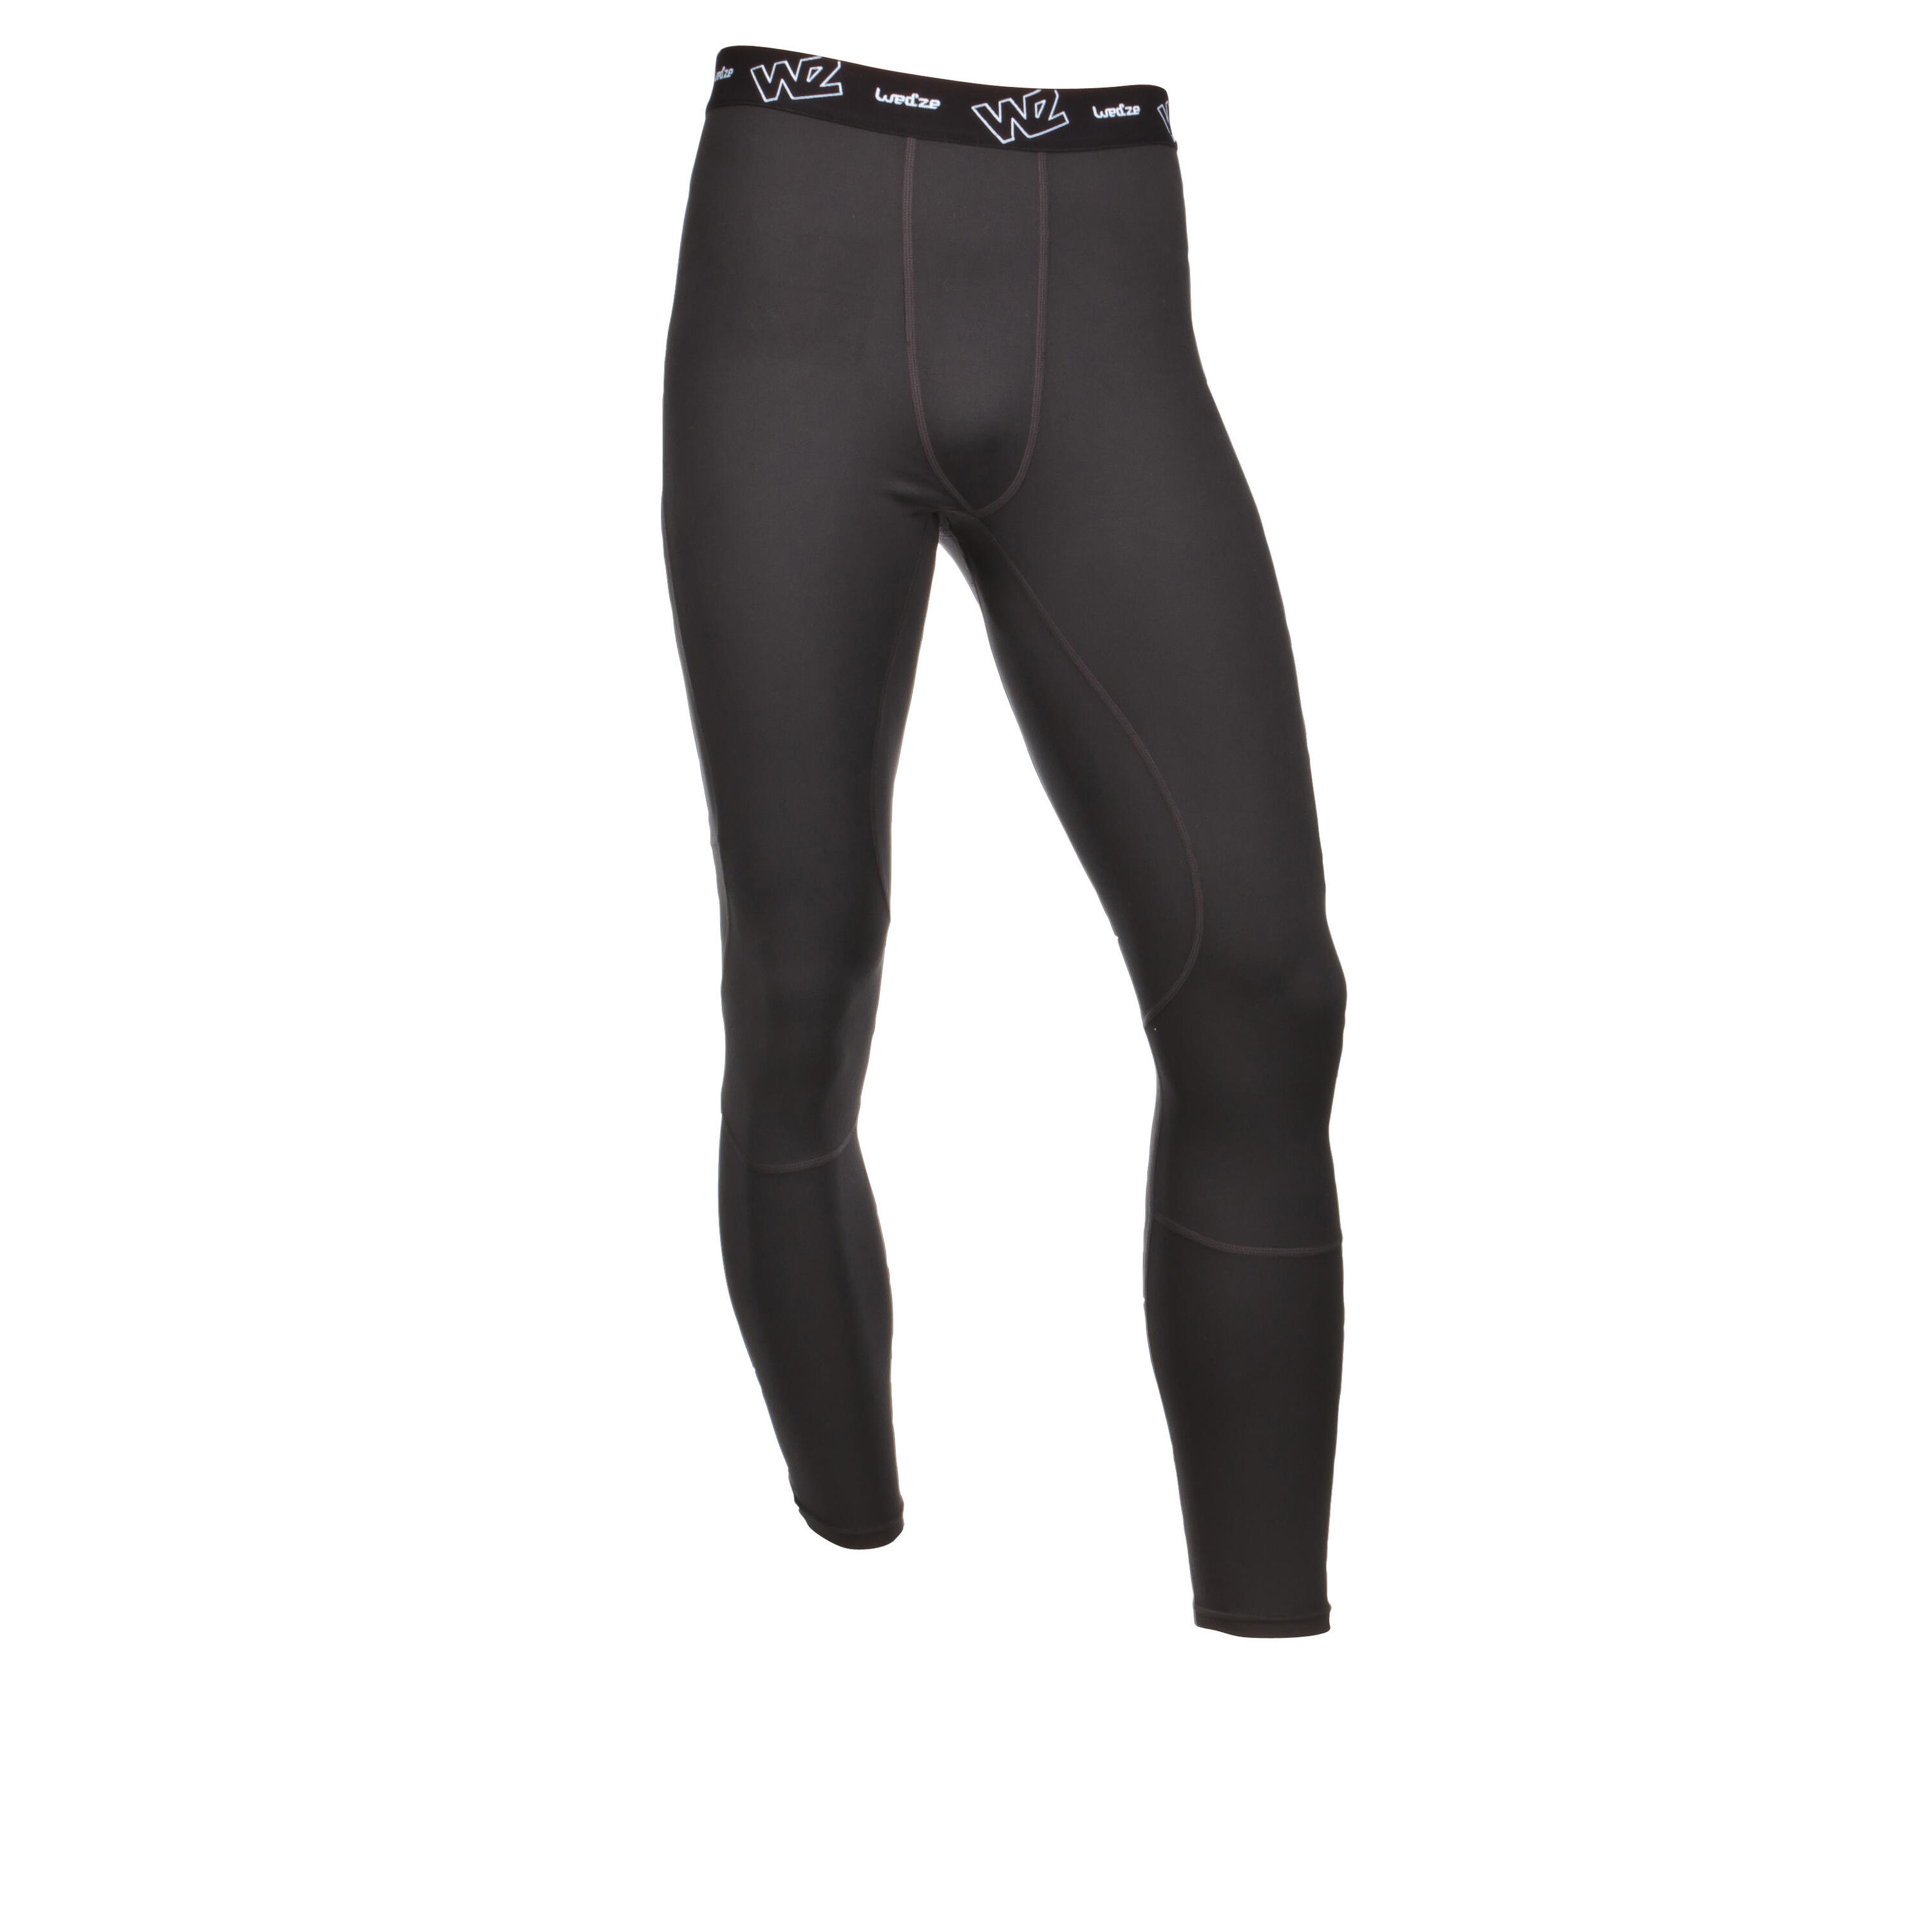 WEDZE Wedze Flowfit Men's Skiing Base Layer Trousers - Black